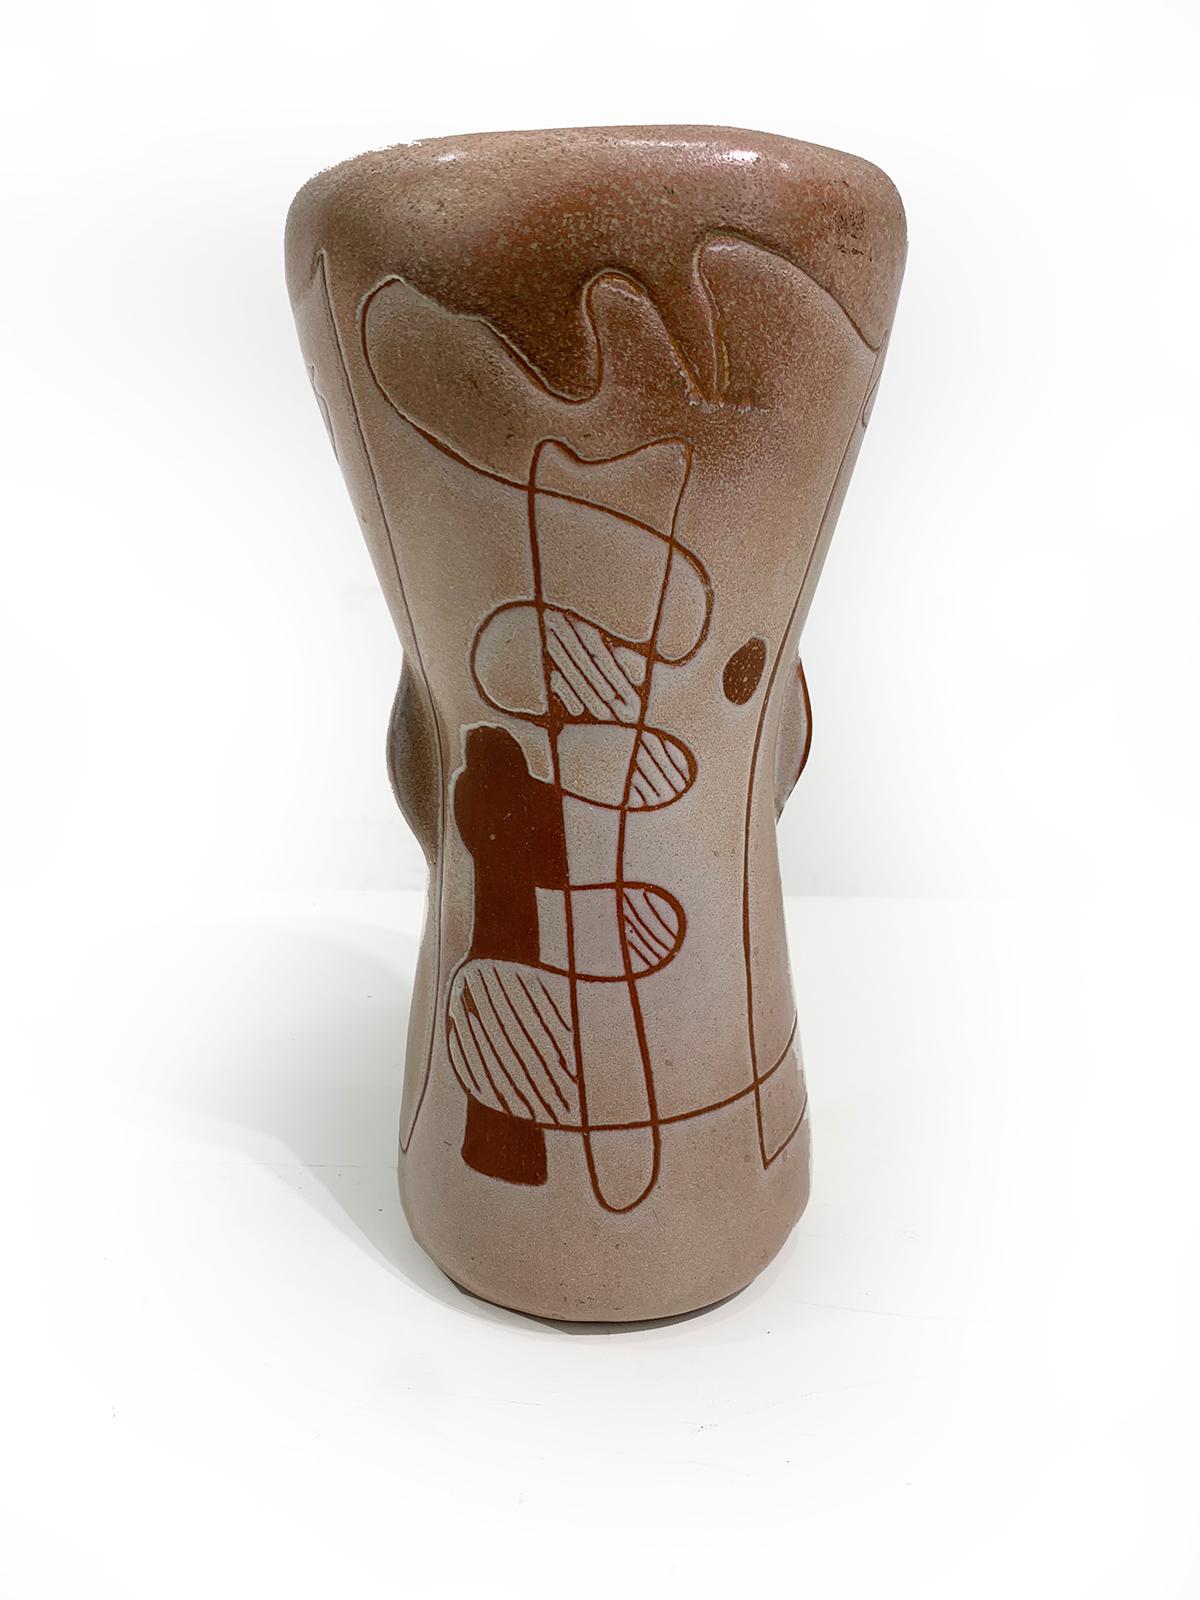 Vase unique en céramique datant du milieu du siècle dernier, avec un design abstrait et des couleurs terre qui lui confèrent un riche attrait vintage,  portant la signature de l'artiste sur la face inférieure, vers 1960.
